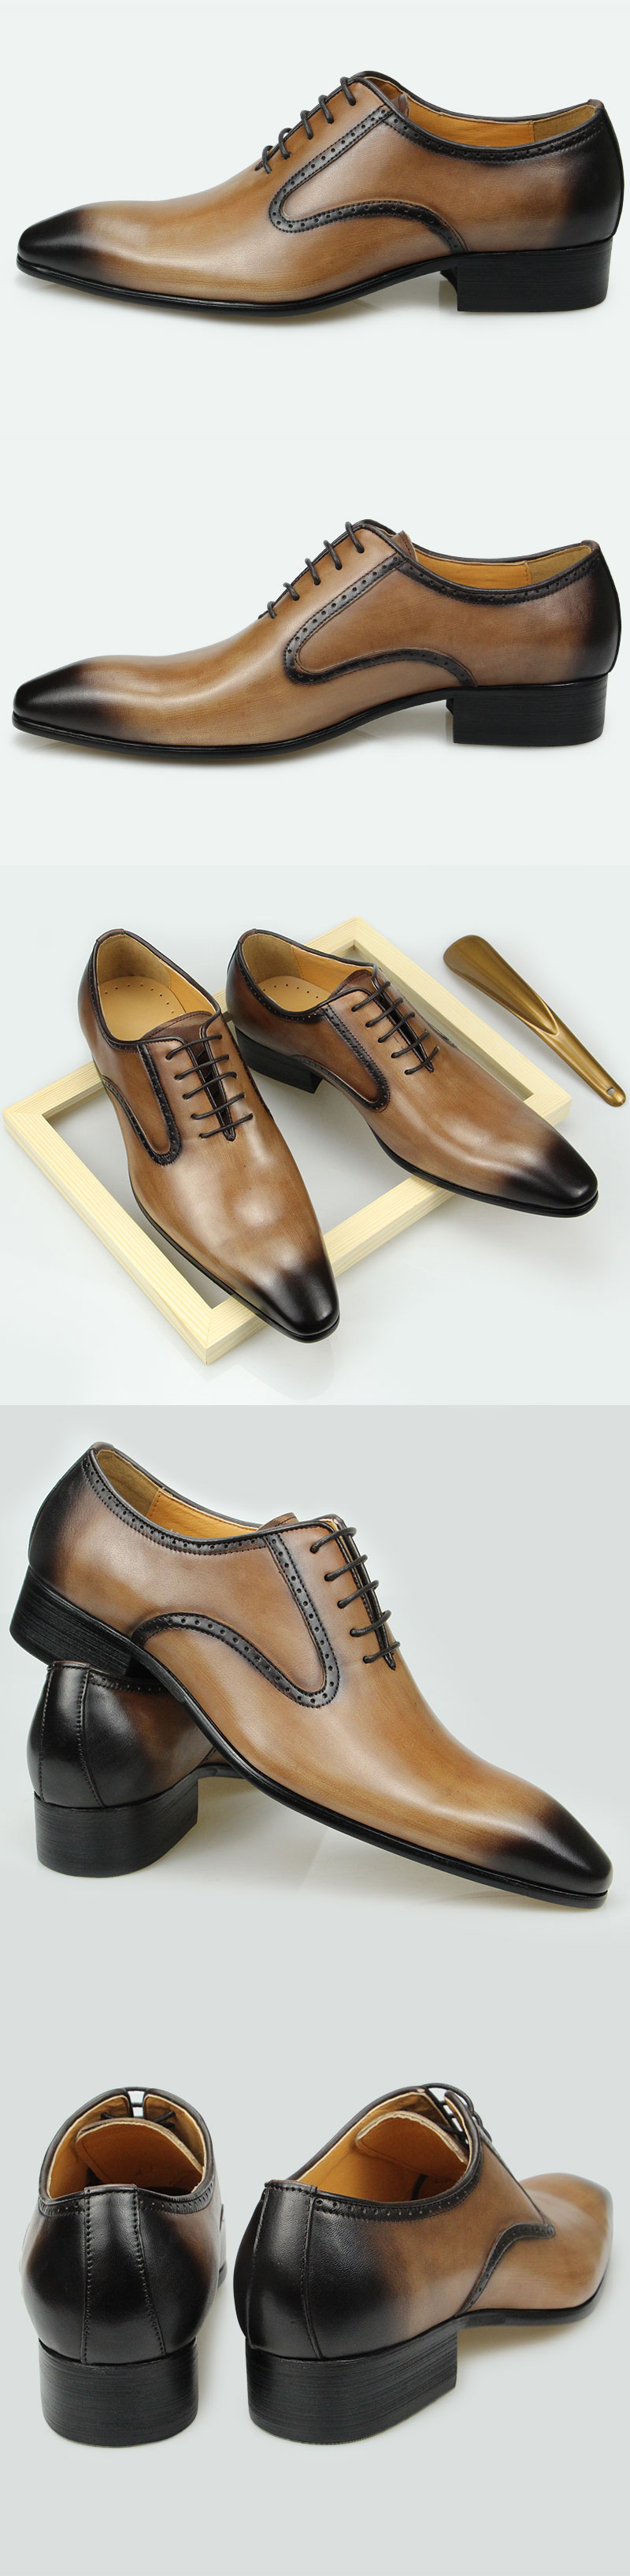 come4buy.com-Casualowe buty Oxford dla mężczyzn